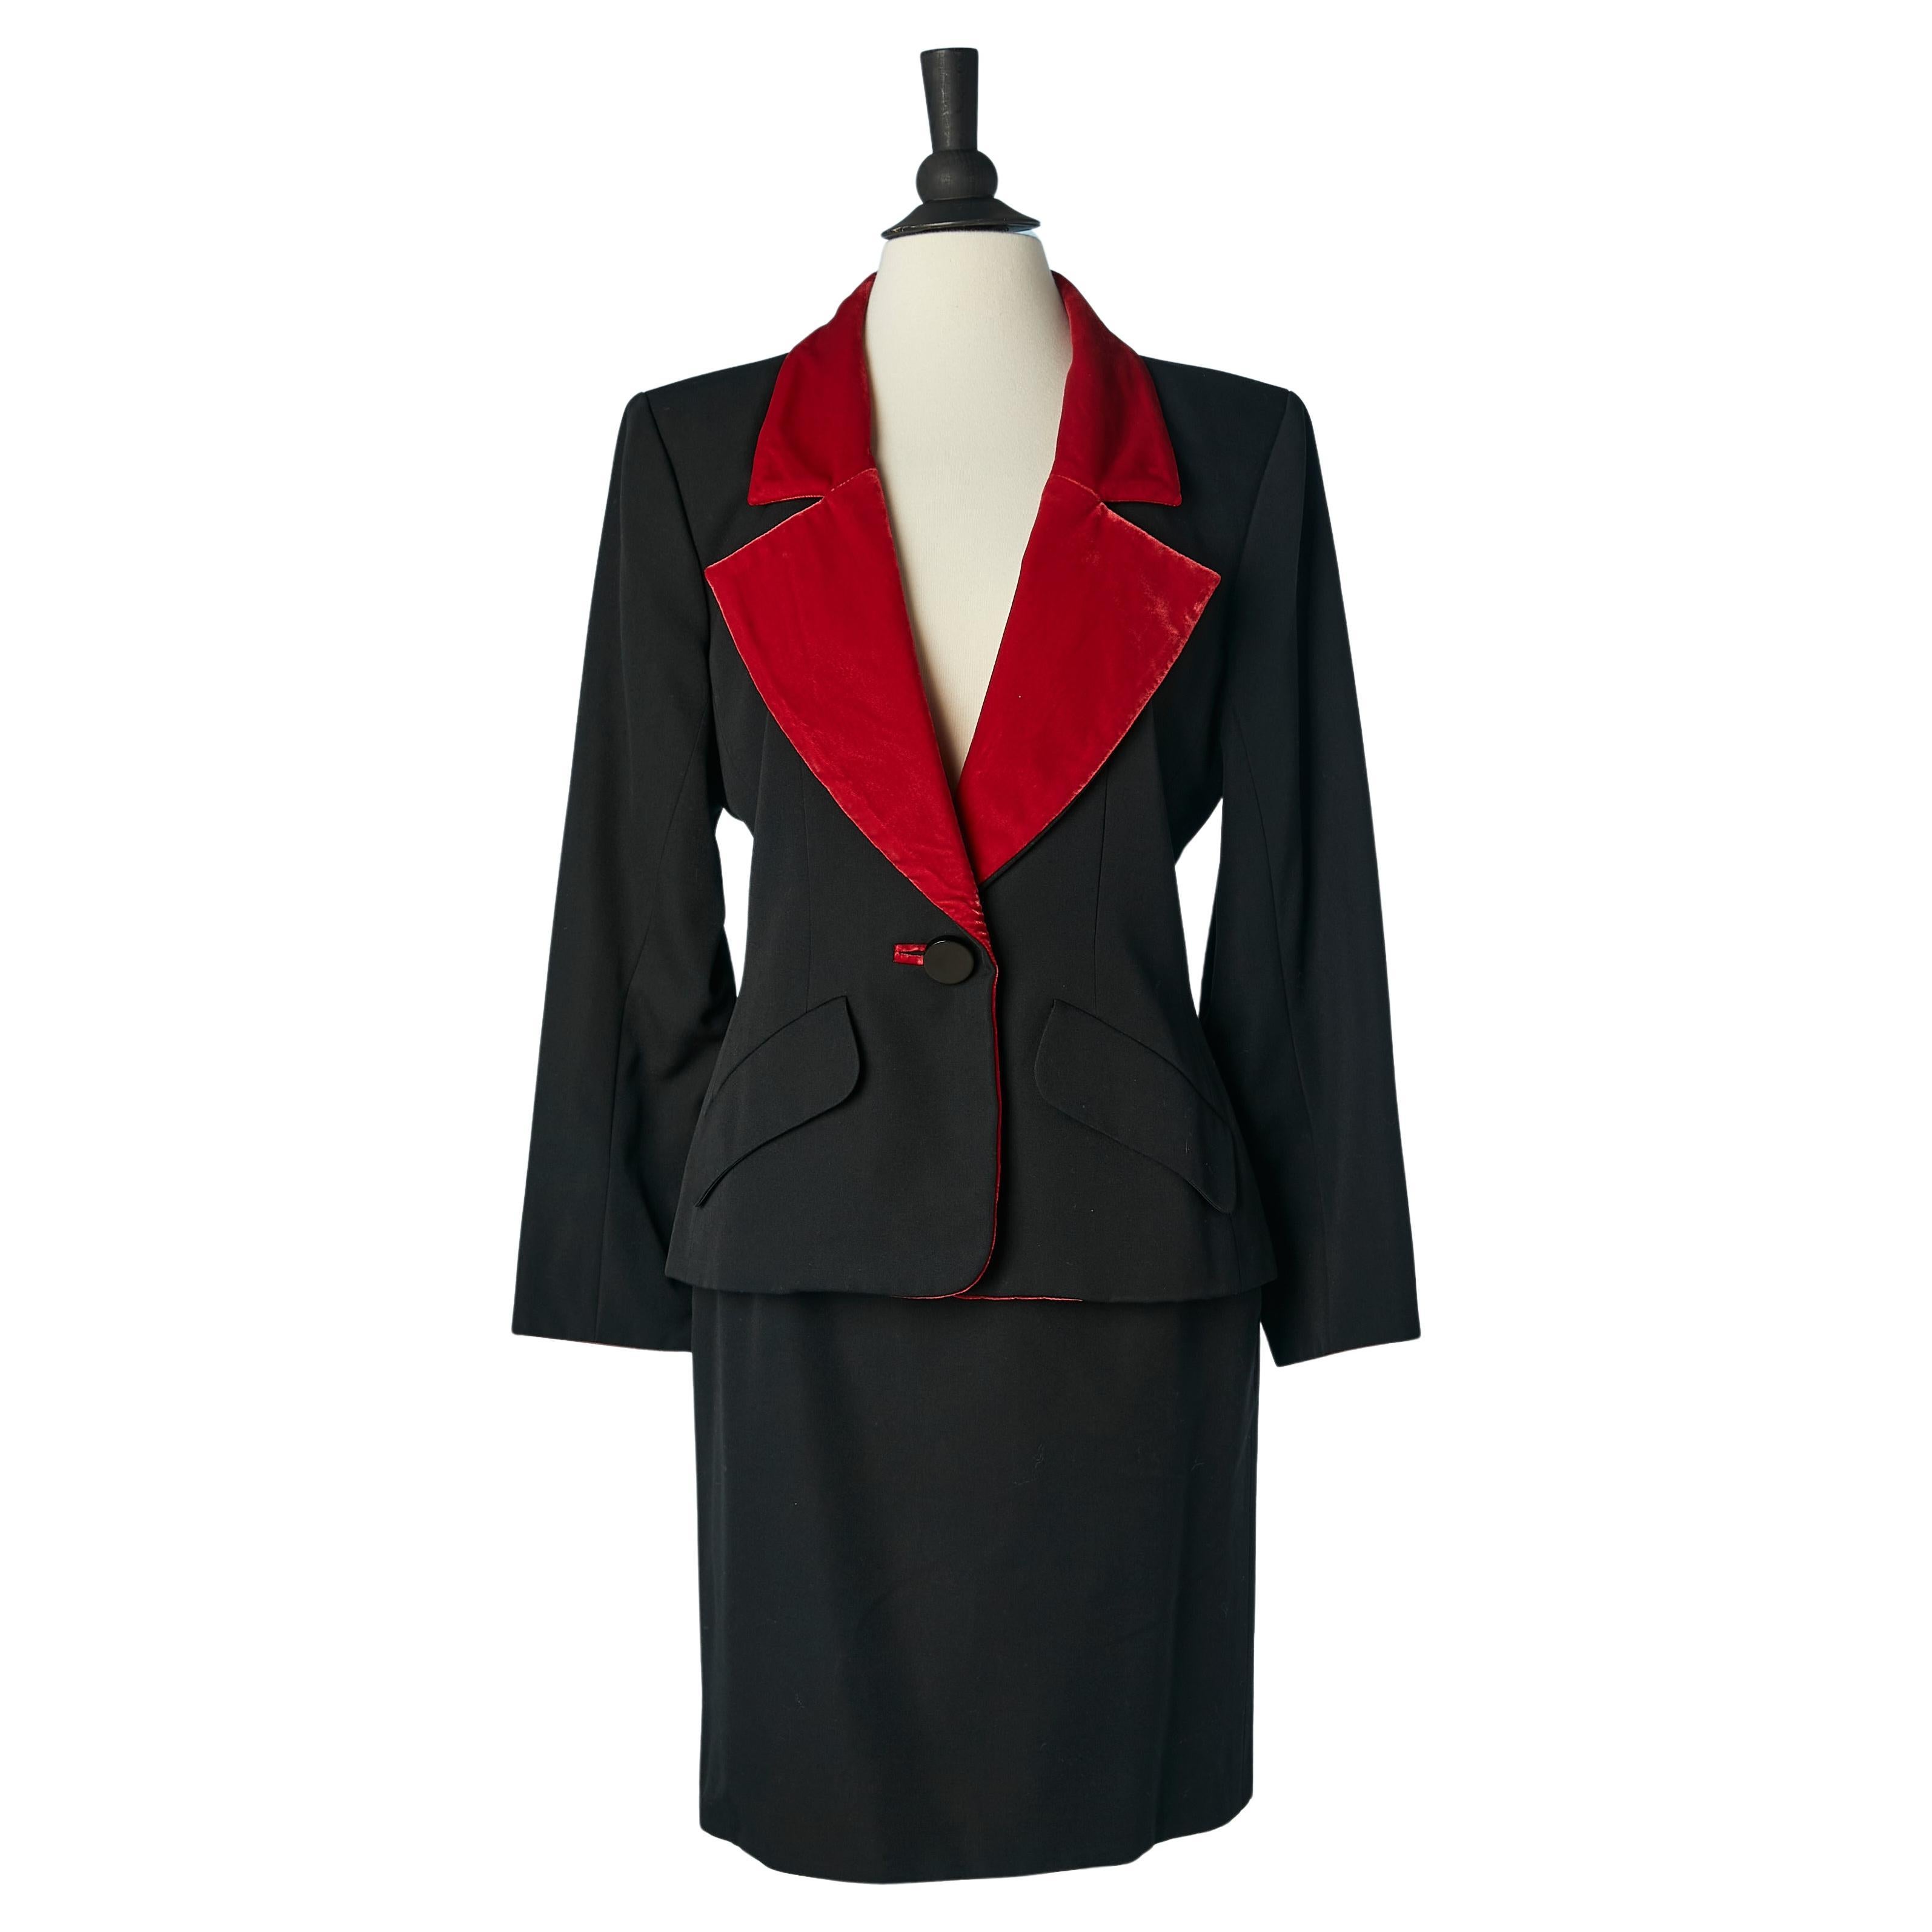 Black skirt-suit with red velvet details Yves Saint Laurent Rive Gauche 1980's  For Sale